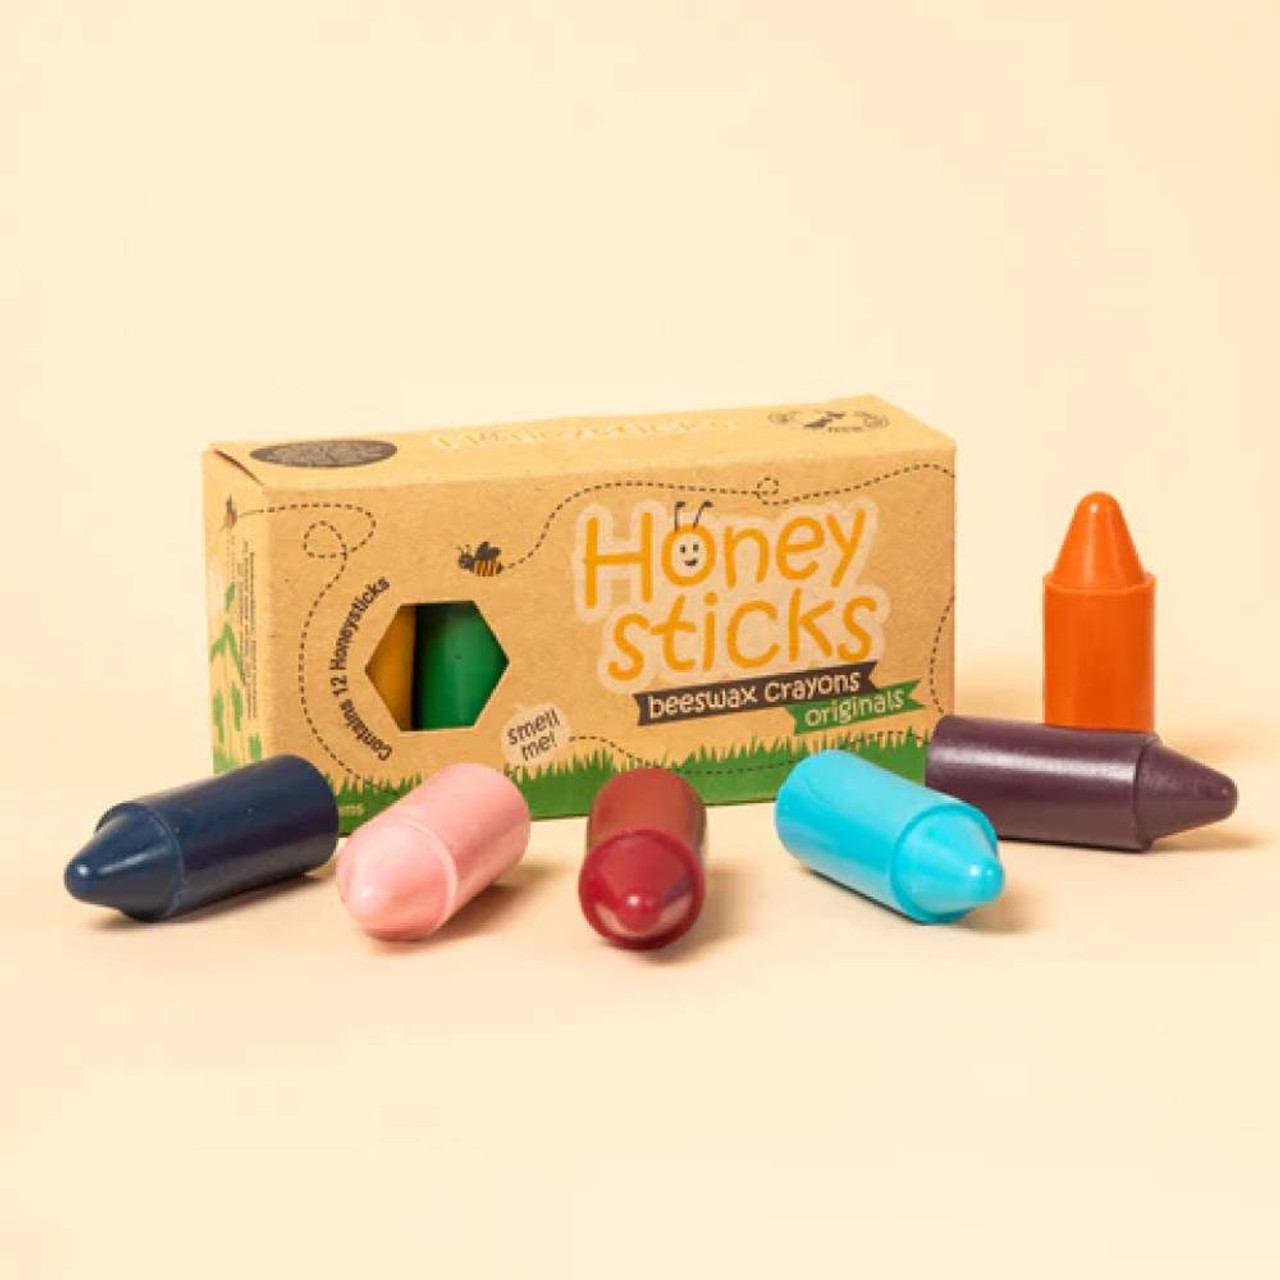 Honeysticks Beeswax Crayons Originals - Global Baby